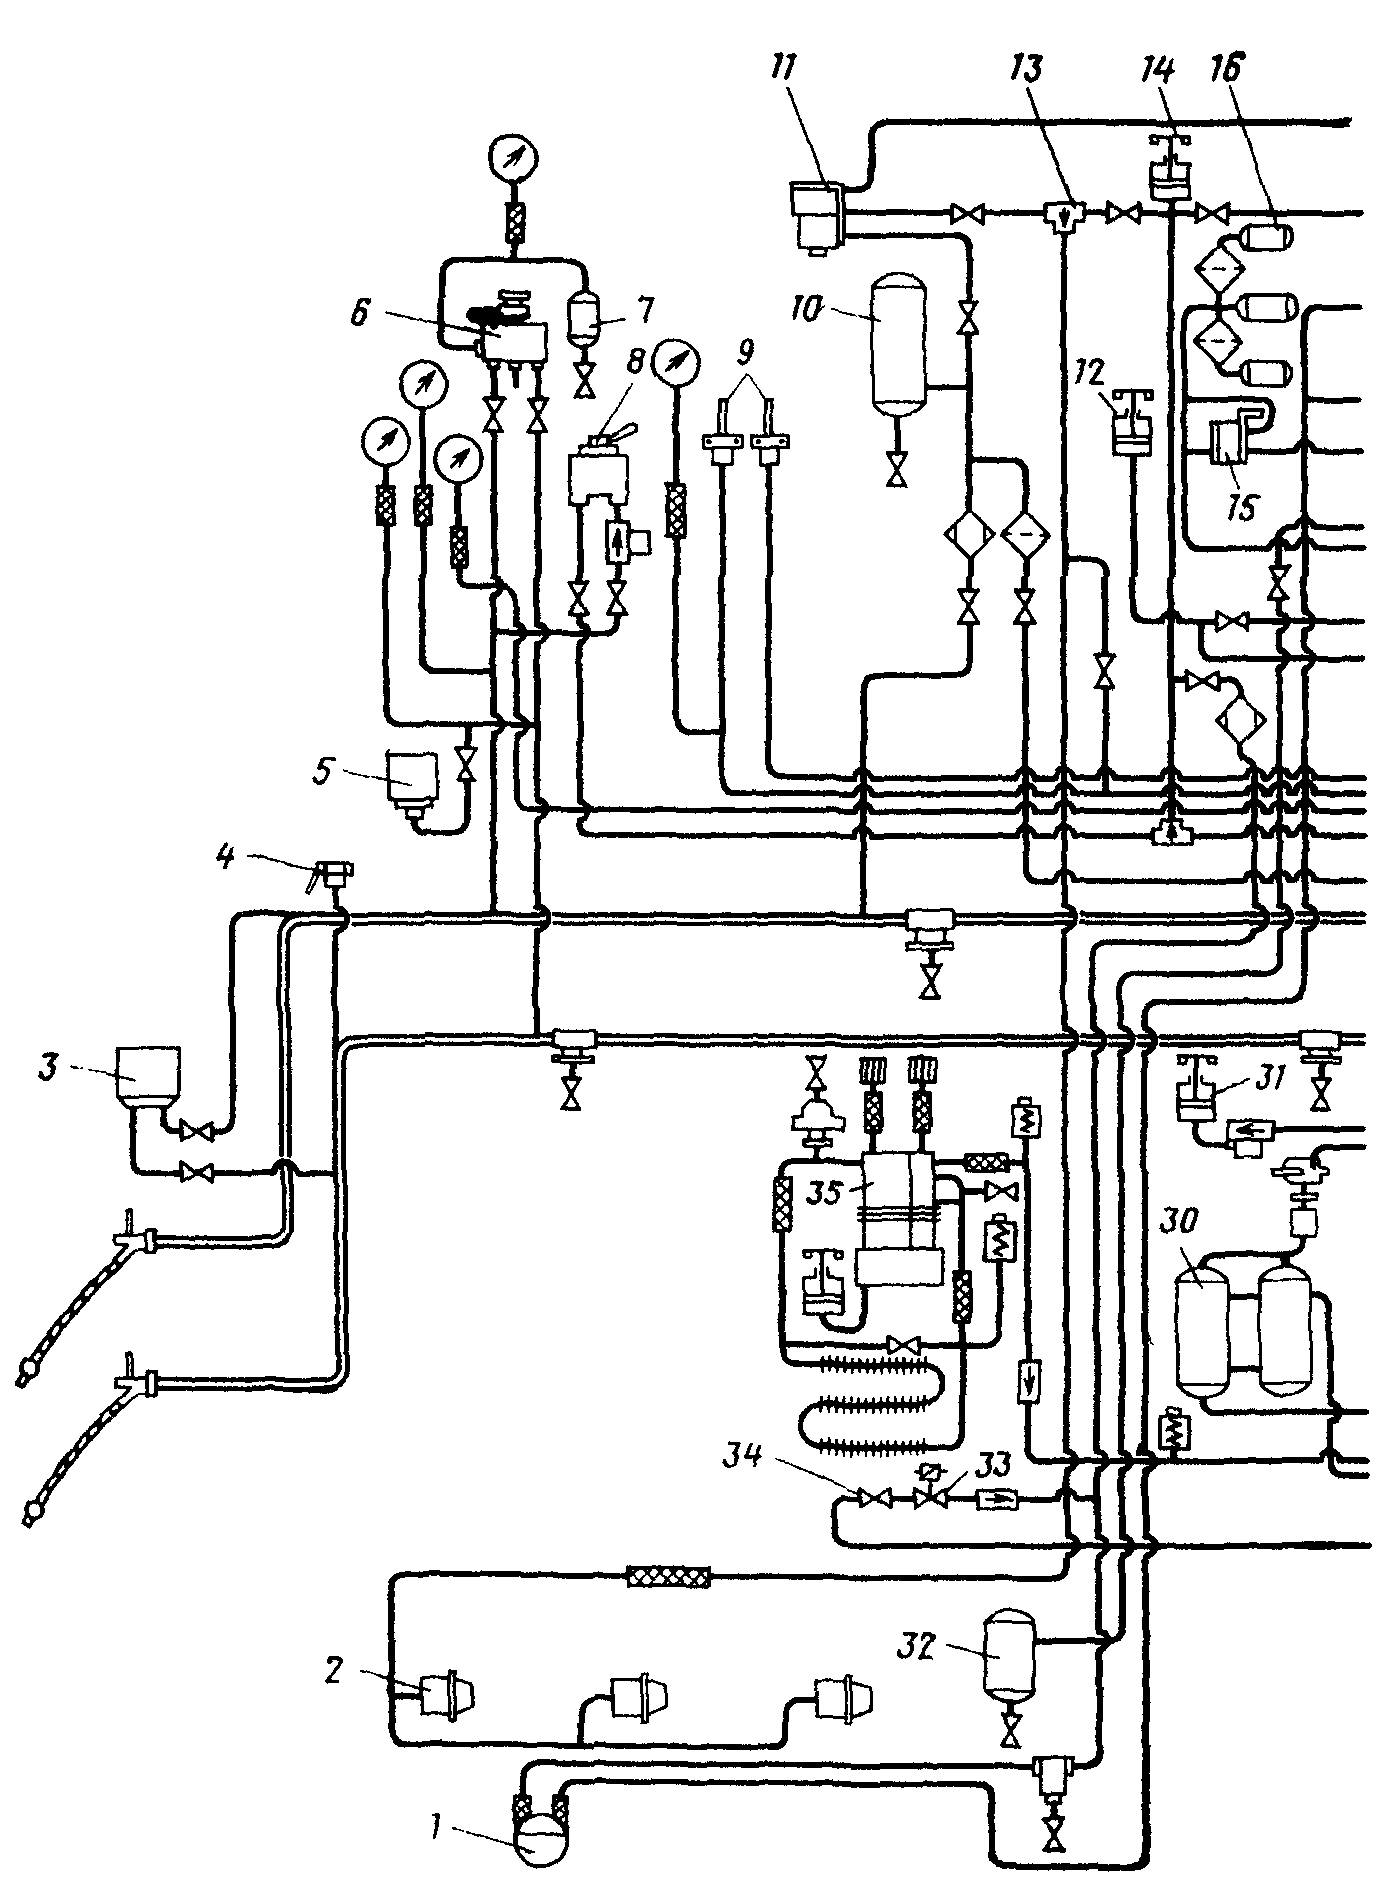 Схема тормозного оборудования односекционных двухкабинных электровозов ЧС2Т и ЧС4Т